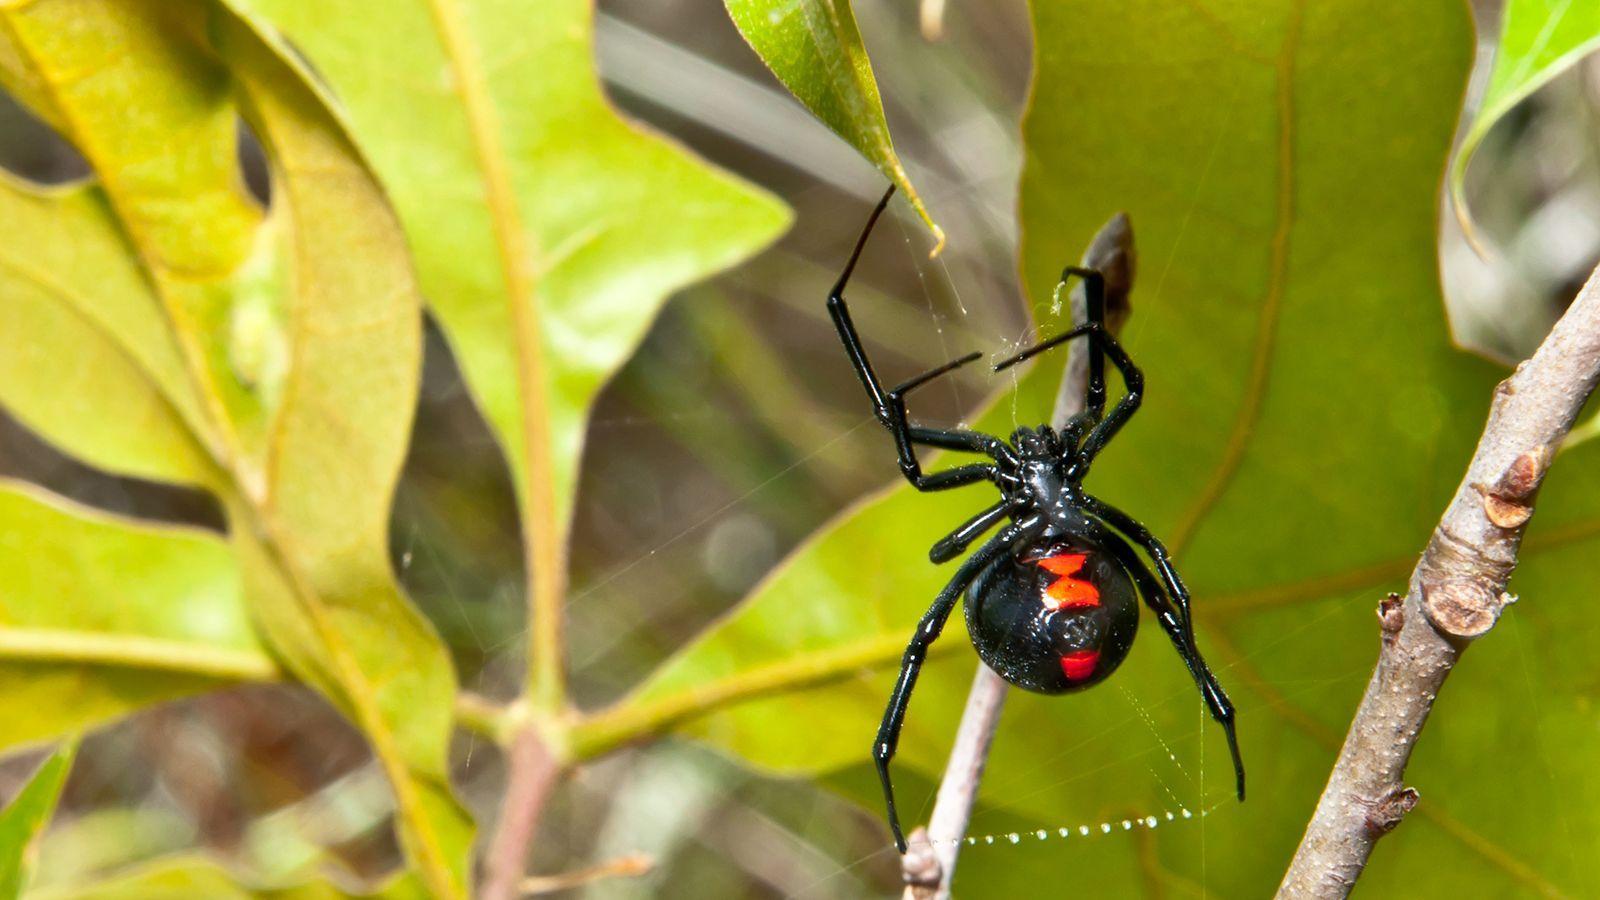 Black Widow Spiders Wallpaper Download, Black Widow Spiders, Animal